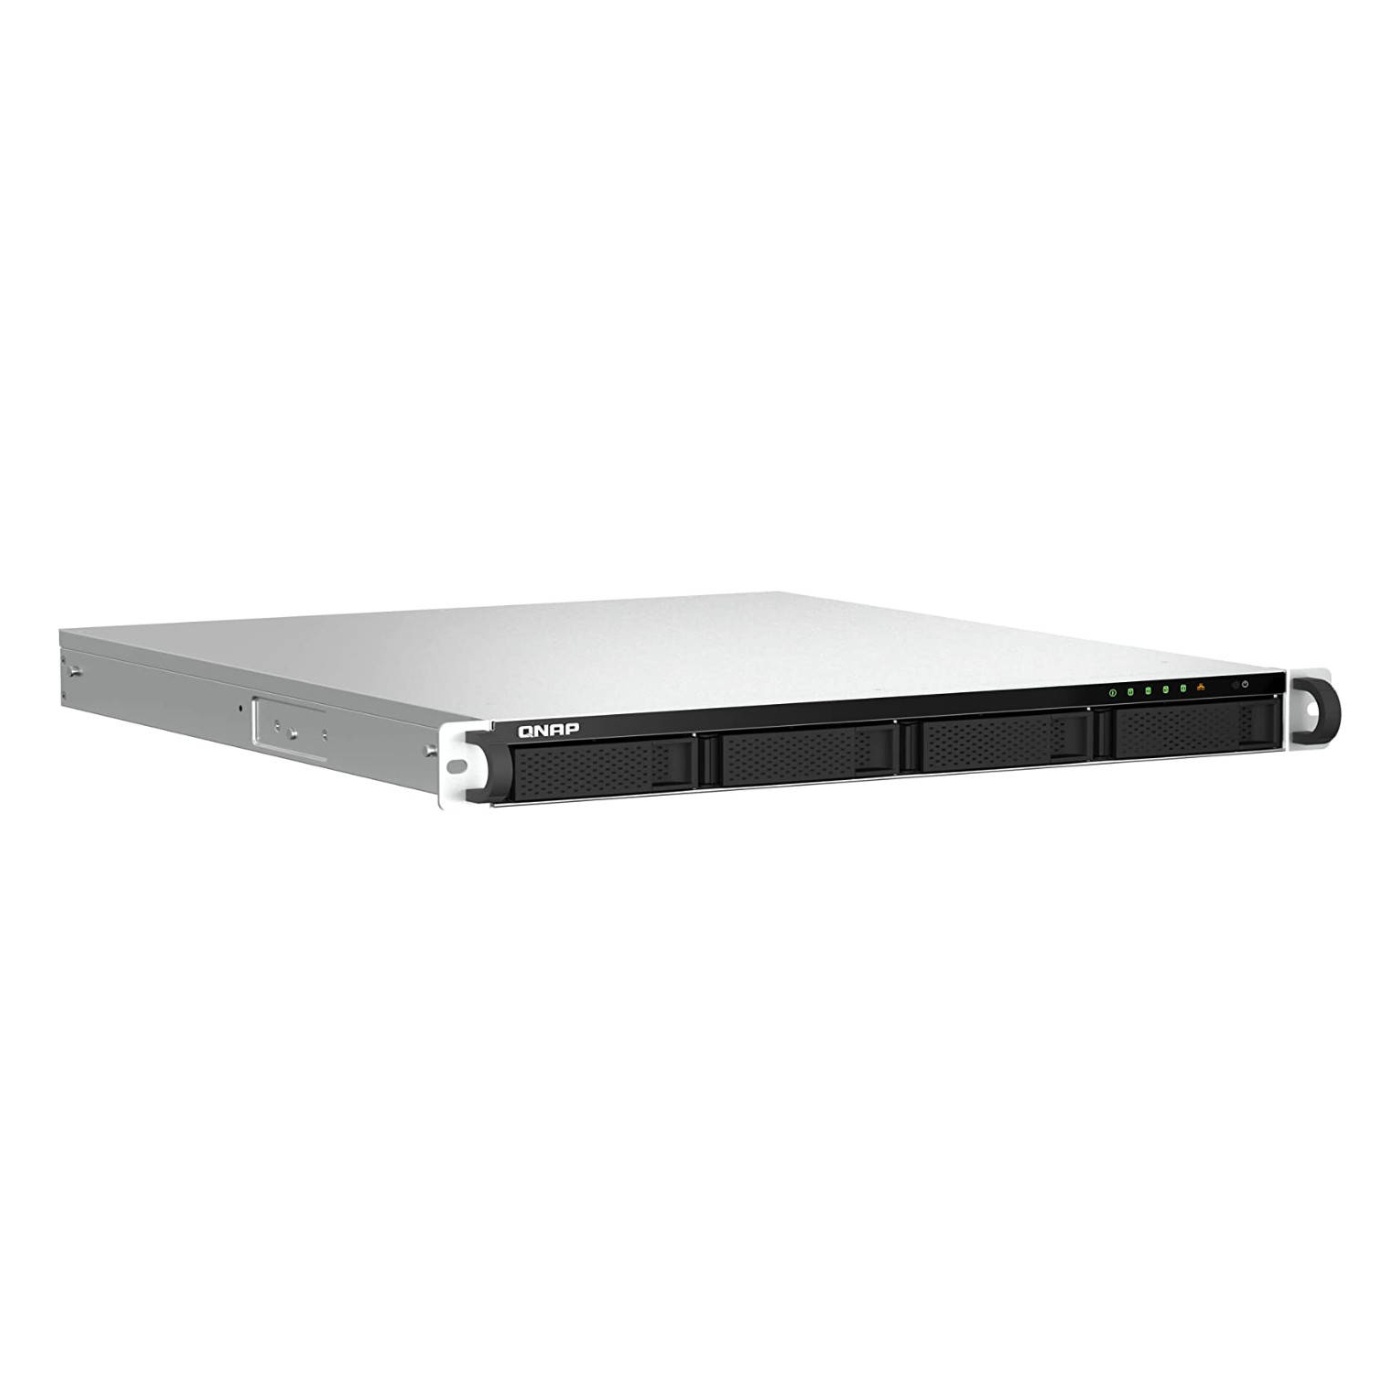 Серверное сетевое хранилище QNAP TS-464U-RP, 4 отсека, 4 ГБ, без дисков, черный сетевое хранилище nas qnap ts 464u rp 8g